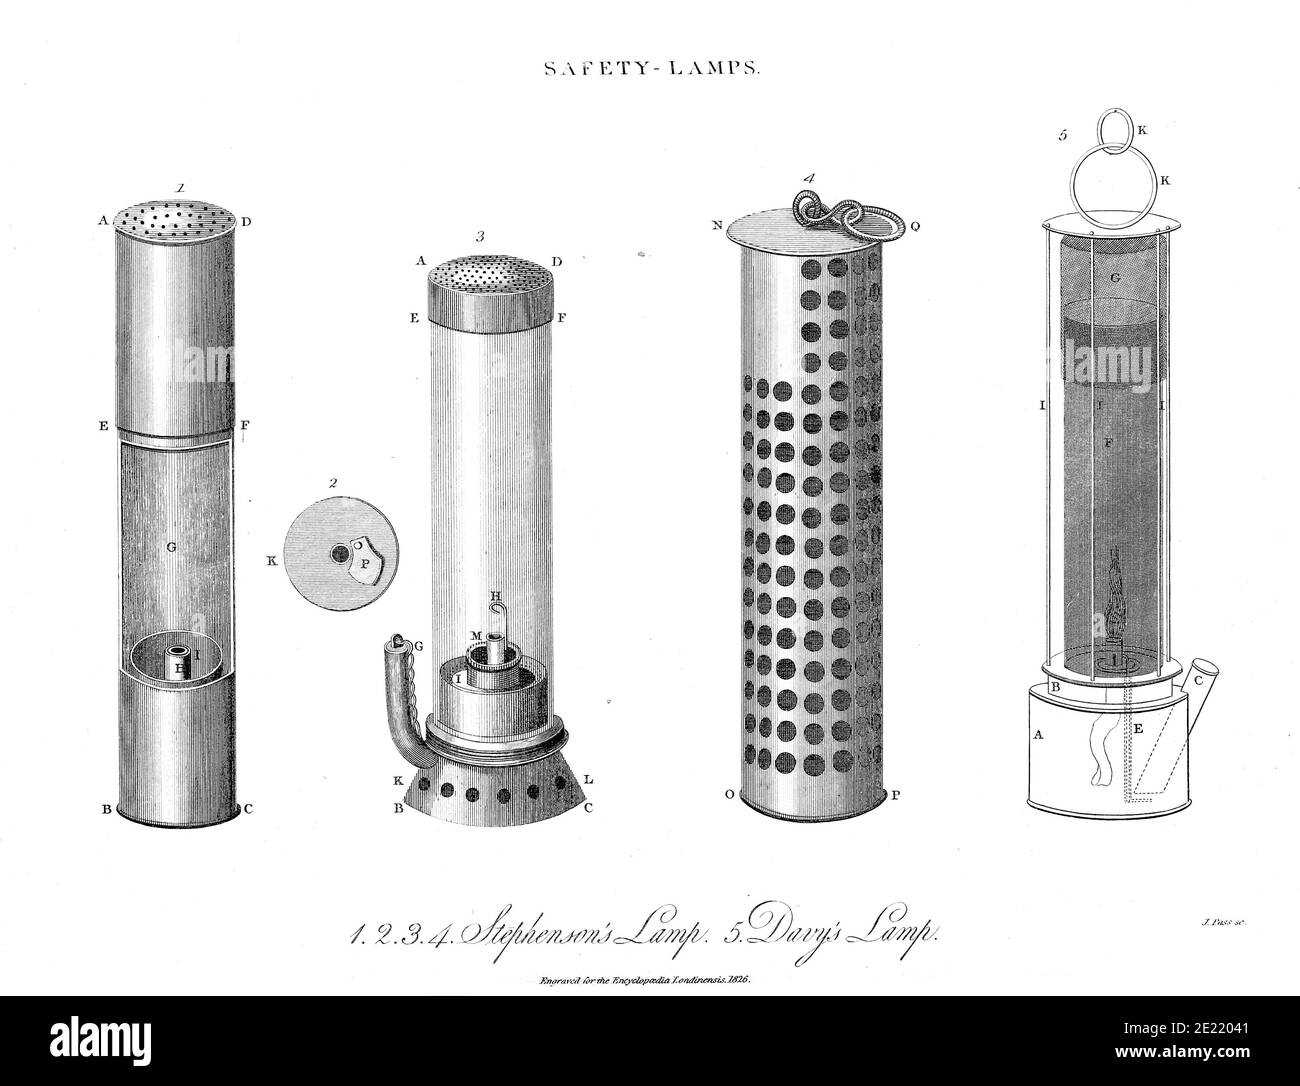 Feux de sécurité UNE lampe de sécurité est l'un des types de lampes qui fournissent un éclairage dans les mines de charbon et est conçue pour fonctionner dans l'air qui peut contenir de la poussière de charbon ou des gaz, qui sont tous deux potentiellement inflammables ou explosifs. Jusqu'au développement de lampes électriques efficaces au début des années 1900, les mineurs utilisaient des lampes à flamme pour fournir l'éclairage. Les lampes à flamme ouverte pourraient enflammer les gaz inflammables qui se sont accumulés dans les mines, provoquant des explosions et des lampes de sécurité ont donc été mises au point pour enfermer la flamme et l'empêcher d'enflammer l'atmosphère environnante. Les lampes de sécurité à flamme ont été remplacées dans l'exploitation minière par Banque D'Images